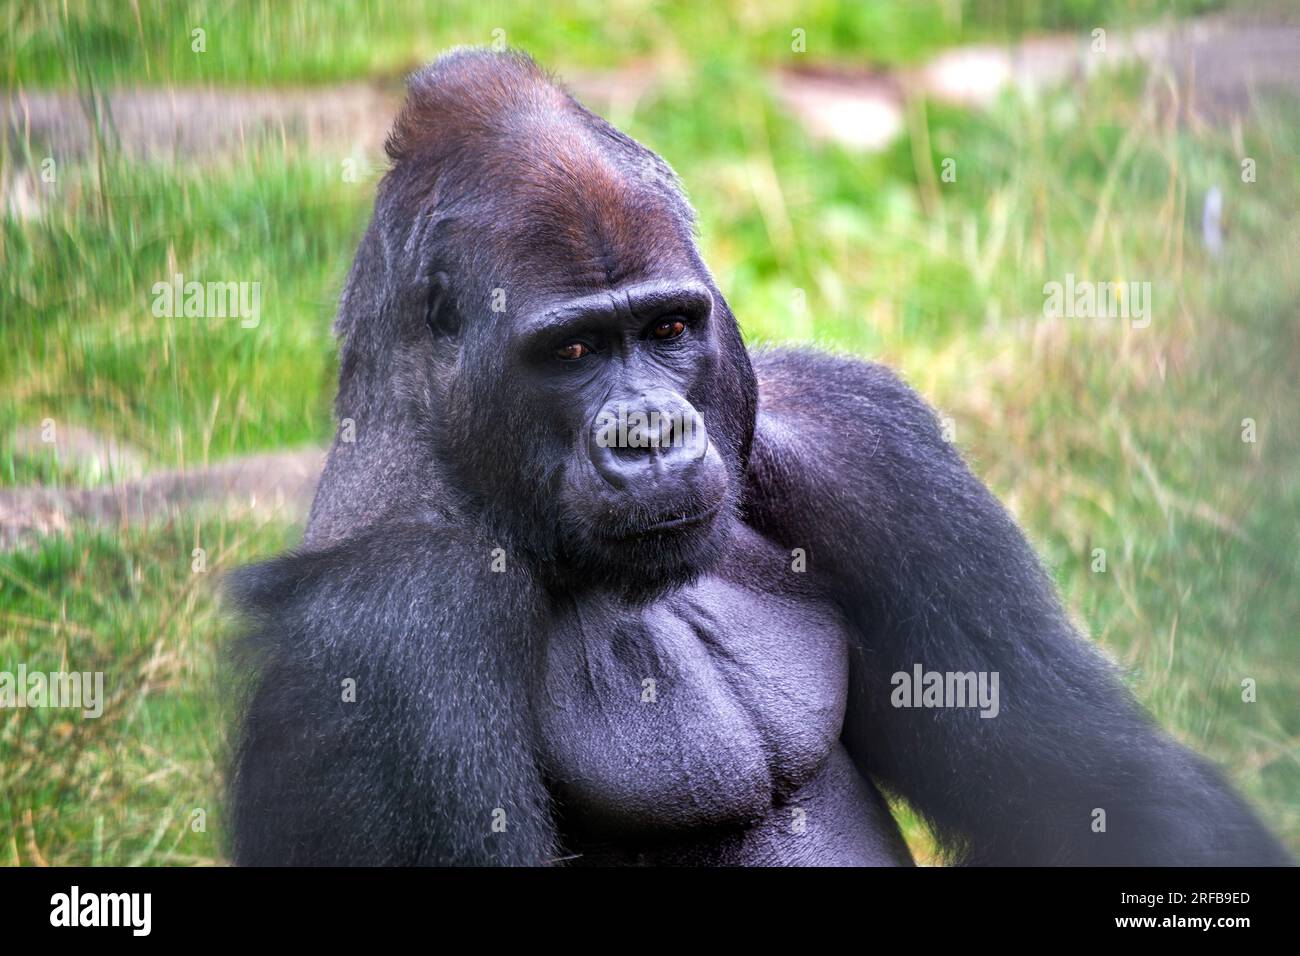 Incontra la maestosa Gorilla delle Lowlands occidentali, Gorilla gorilla, originaria delle fitte foreste pluviali dell'Africa centrale e occidentale. Questa magnifica scimmia C. Foto Stock